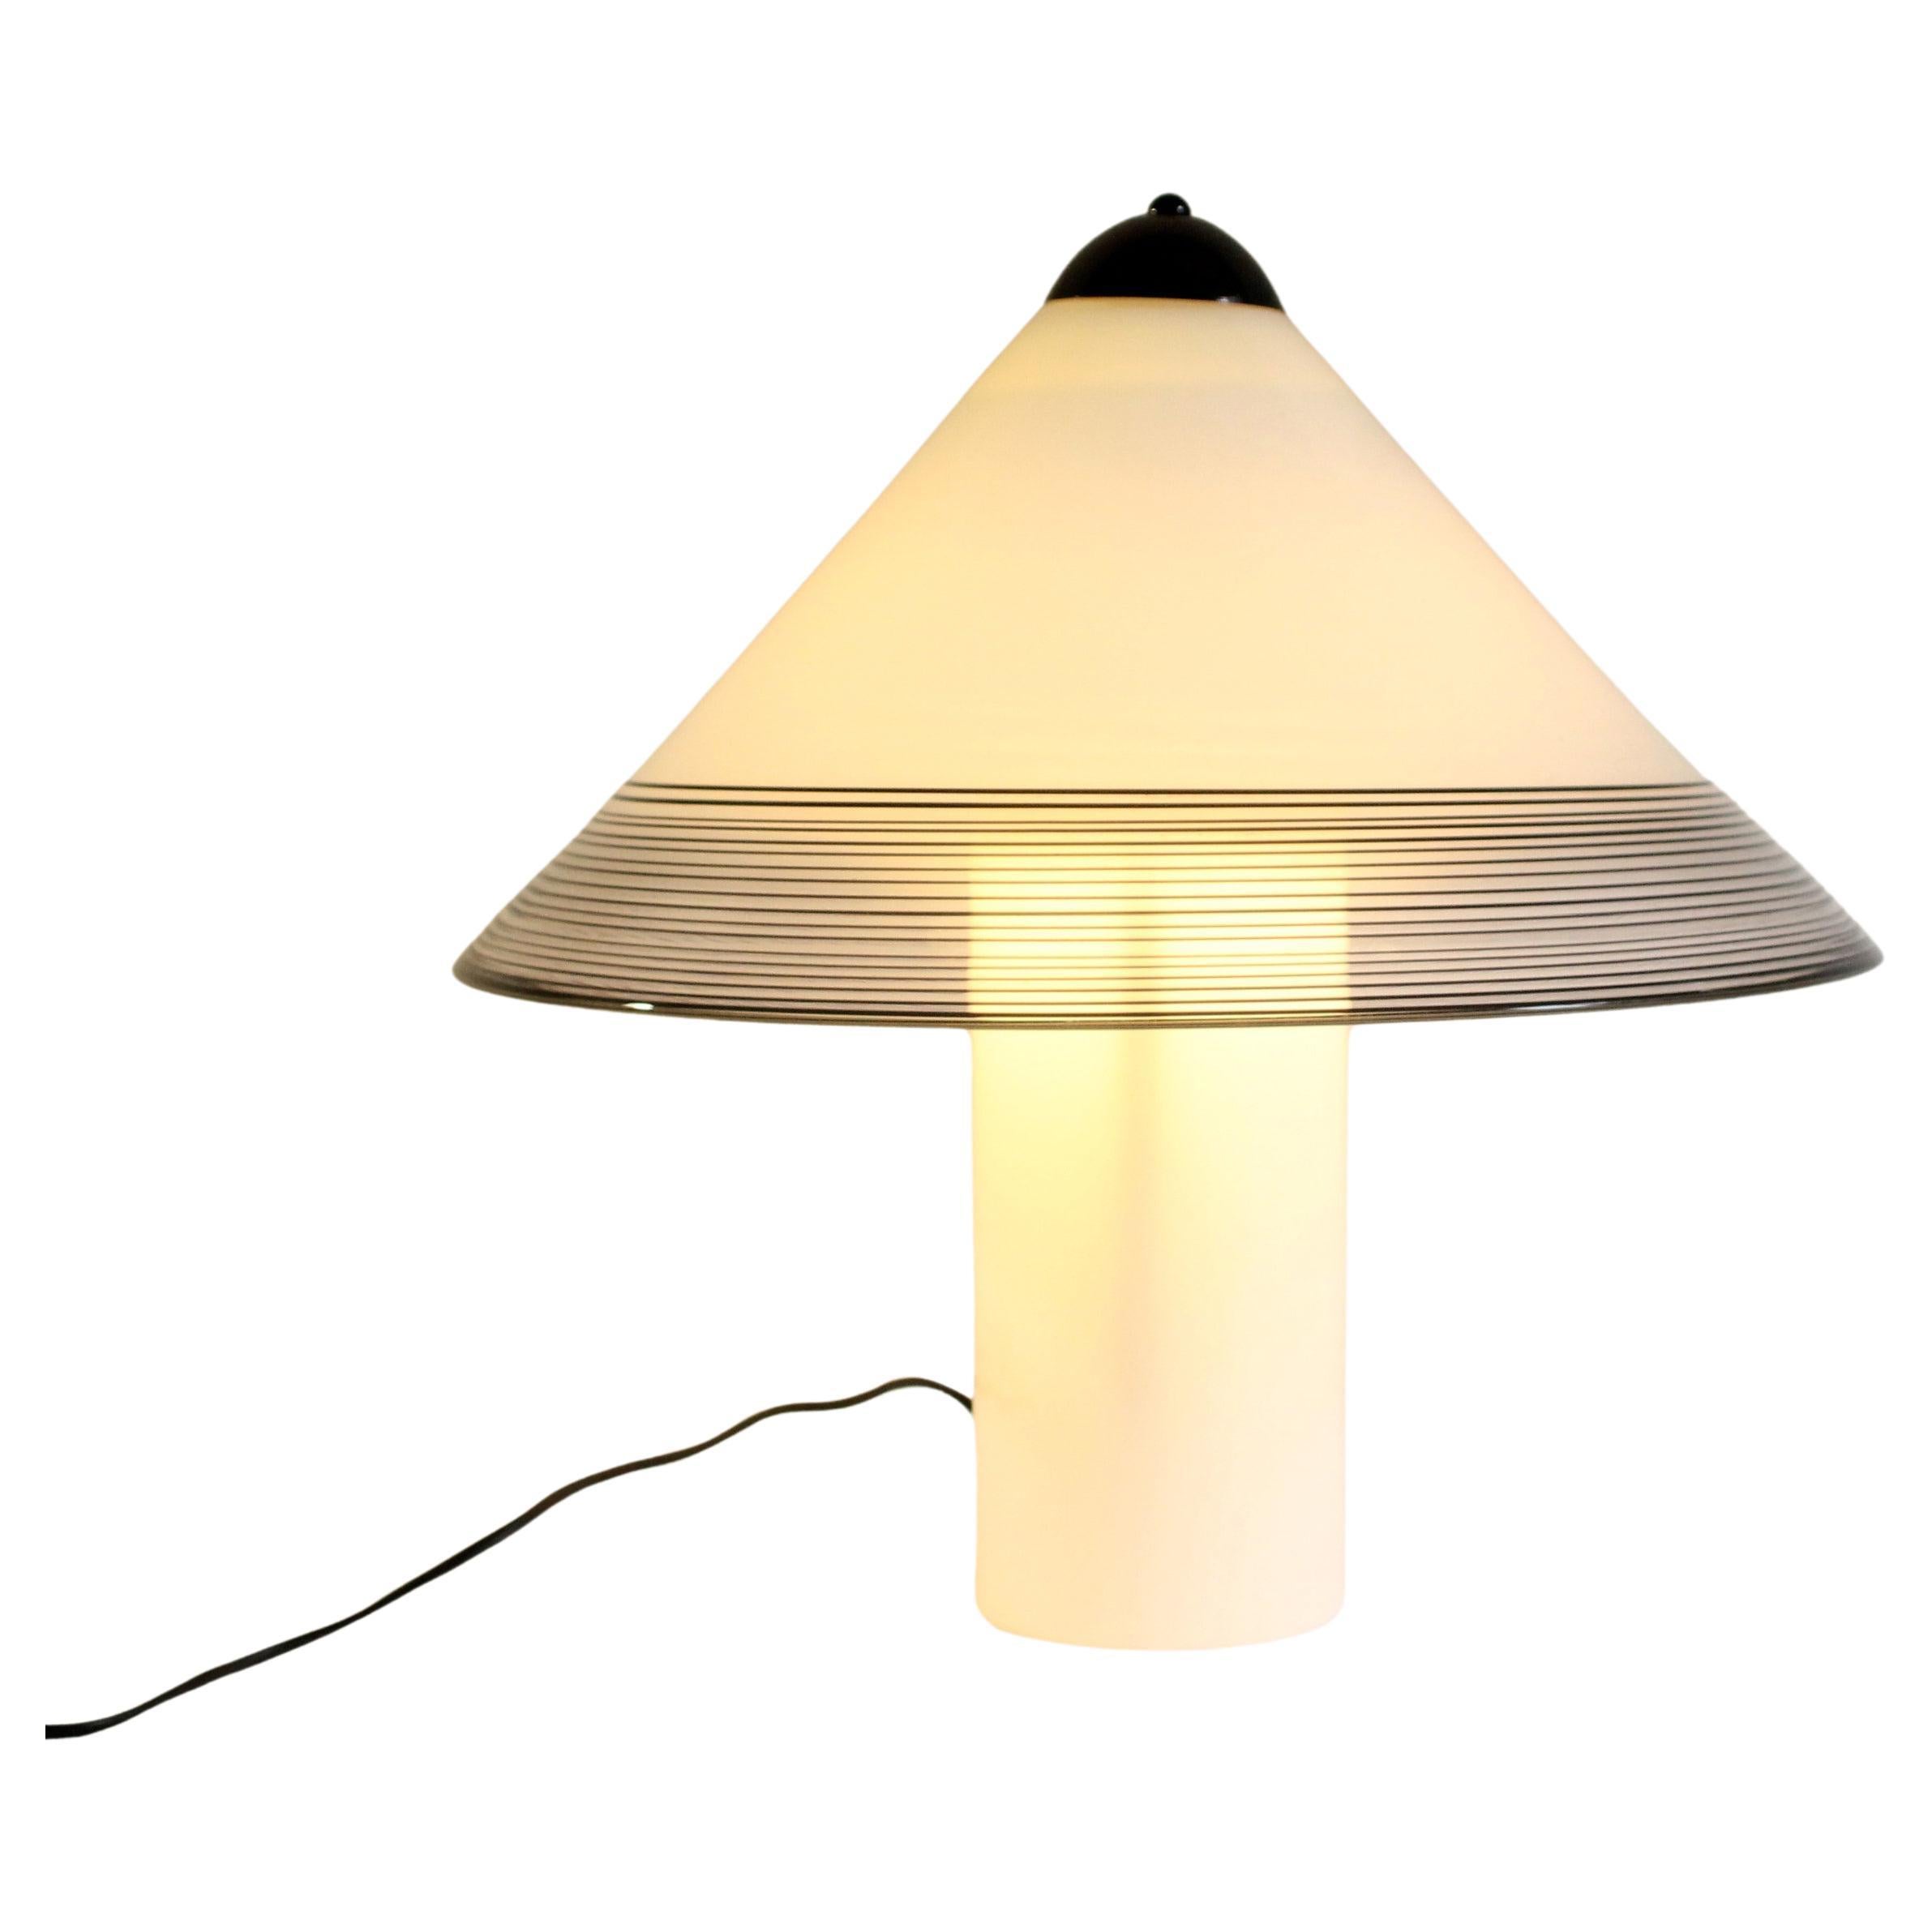 Grande lampe de table Murano par "iTRE" Murano (51Hx51cm) des années 1970. Moderne du milieu du siècle